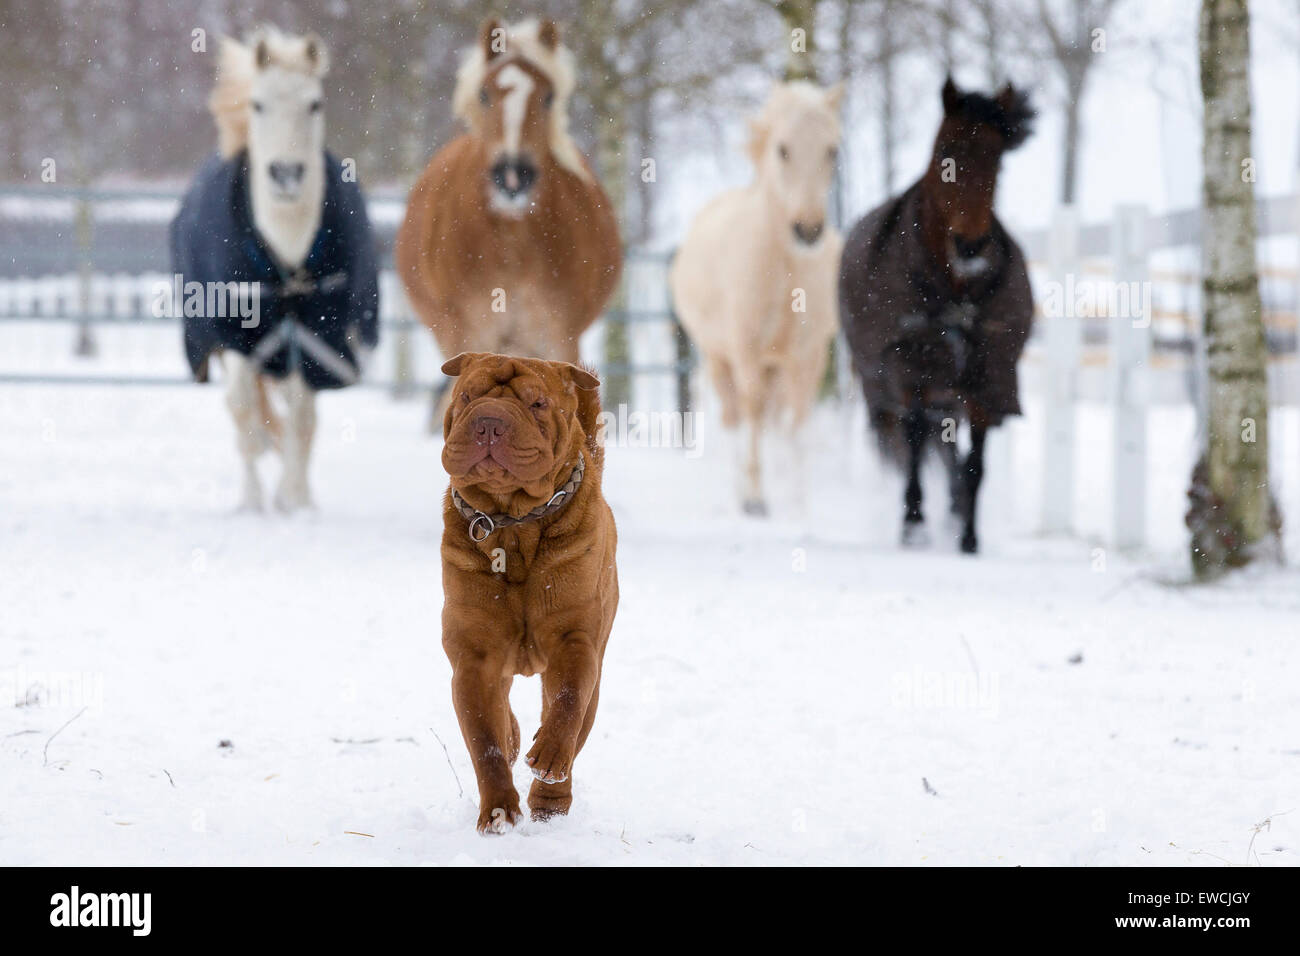 Cuatro ponis tras un Shar-Pei chino en una pastura nevados. Alemania Foto de stock